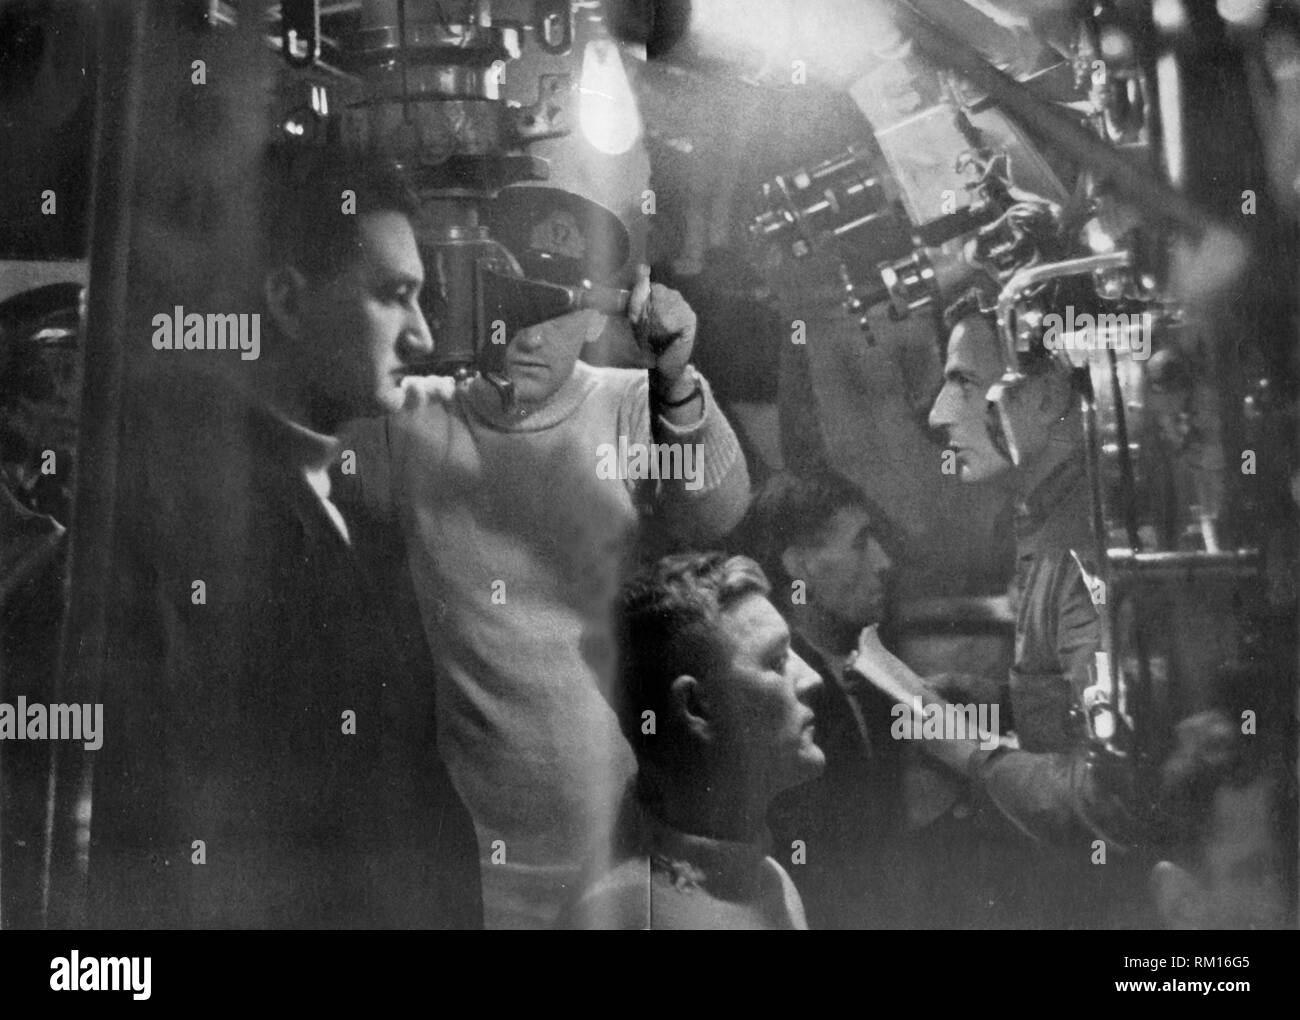 Szene an Bord eines britischen U-Boot, der Zweite Weltkrieg, 1945. Schöpfer: Unbekannt. Stockfoto